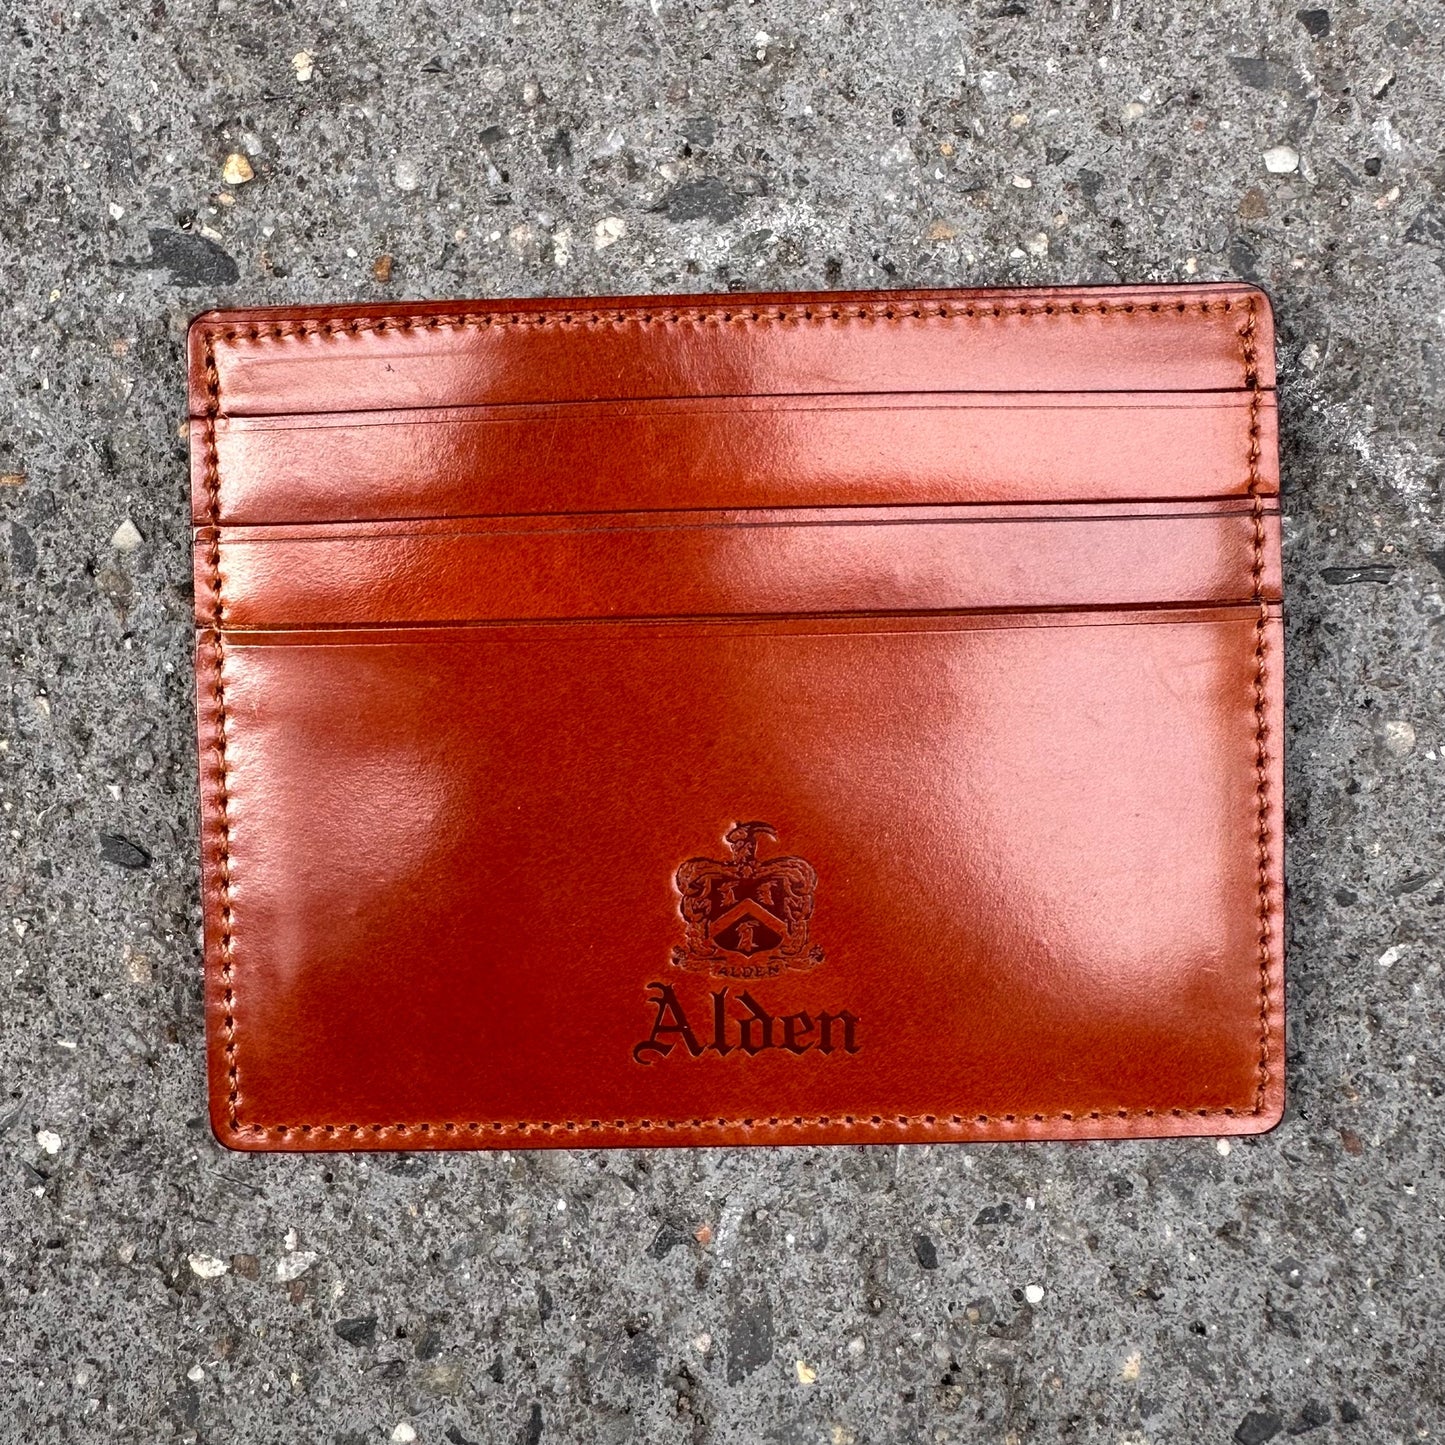 LG 6005 - Alden Cognac Credit Card Holder